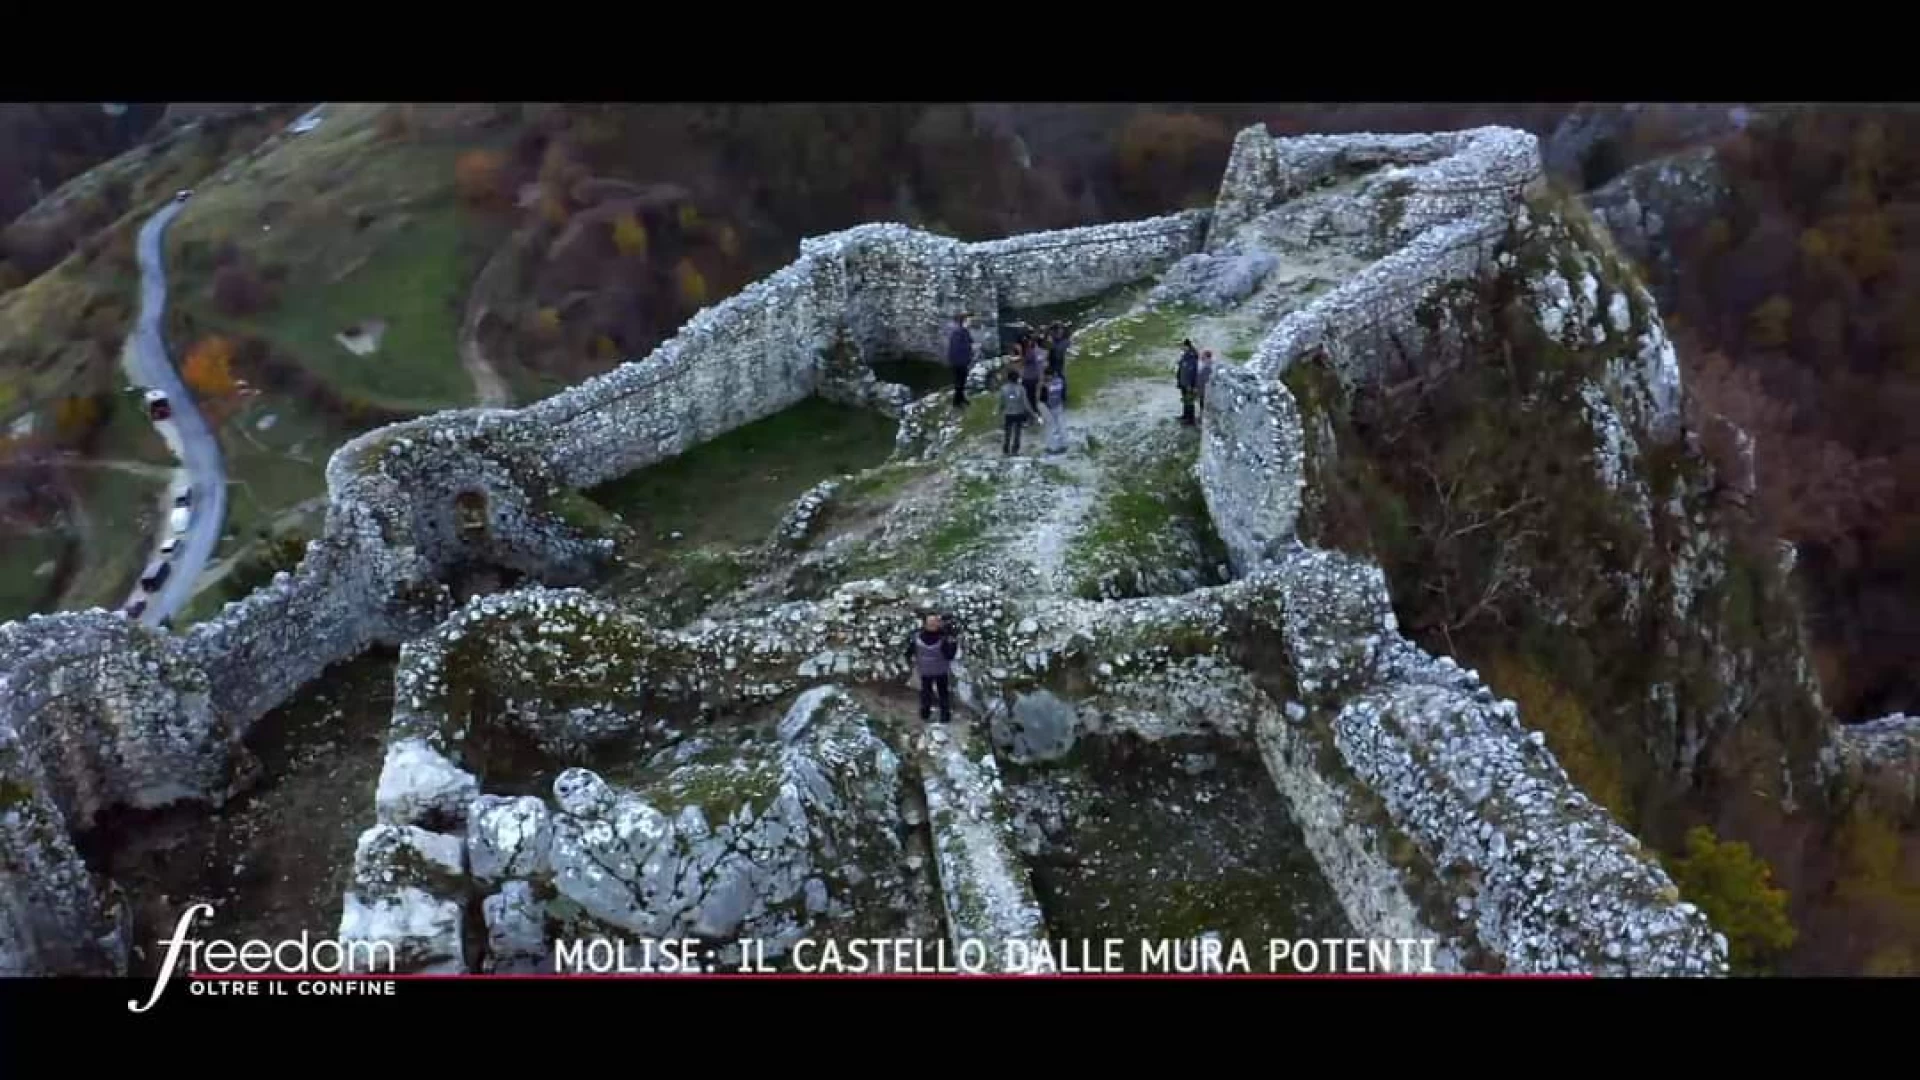 Freedom e Roberto Giacobbo raccontano la storia dei castelli molisani.